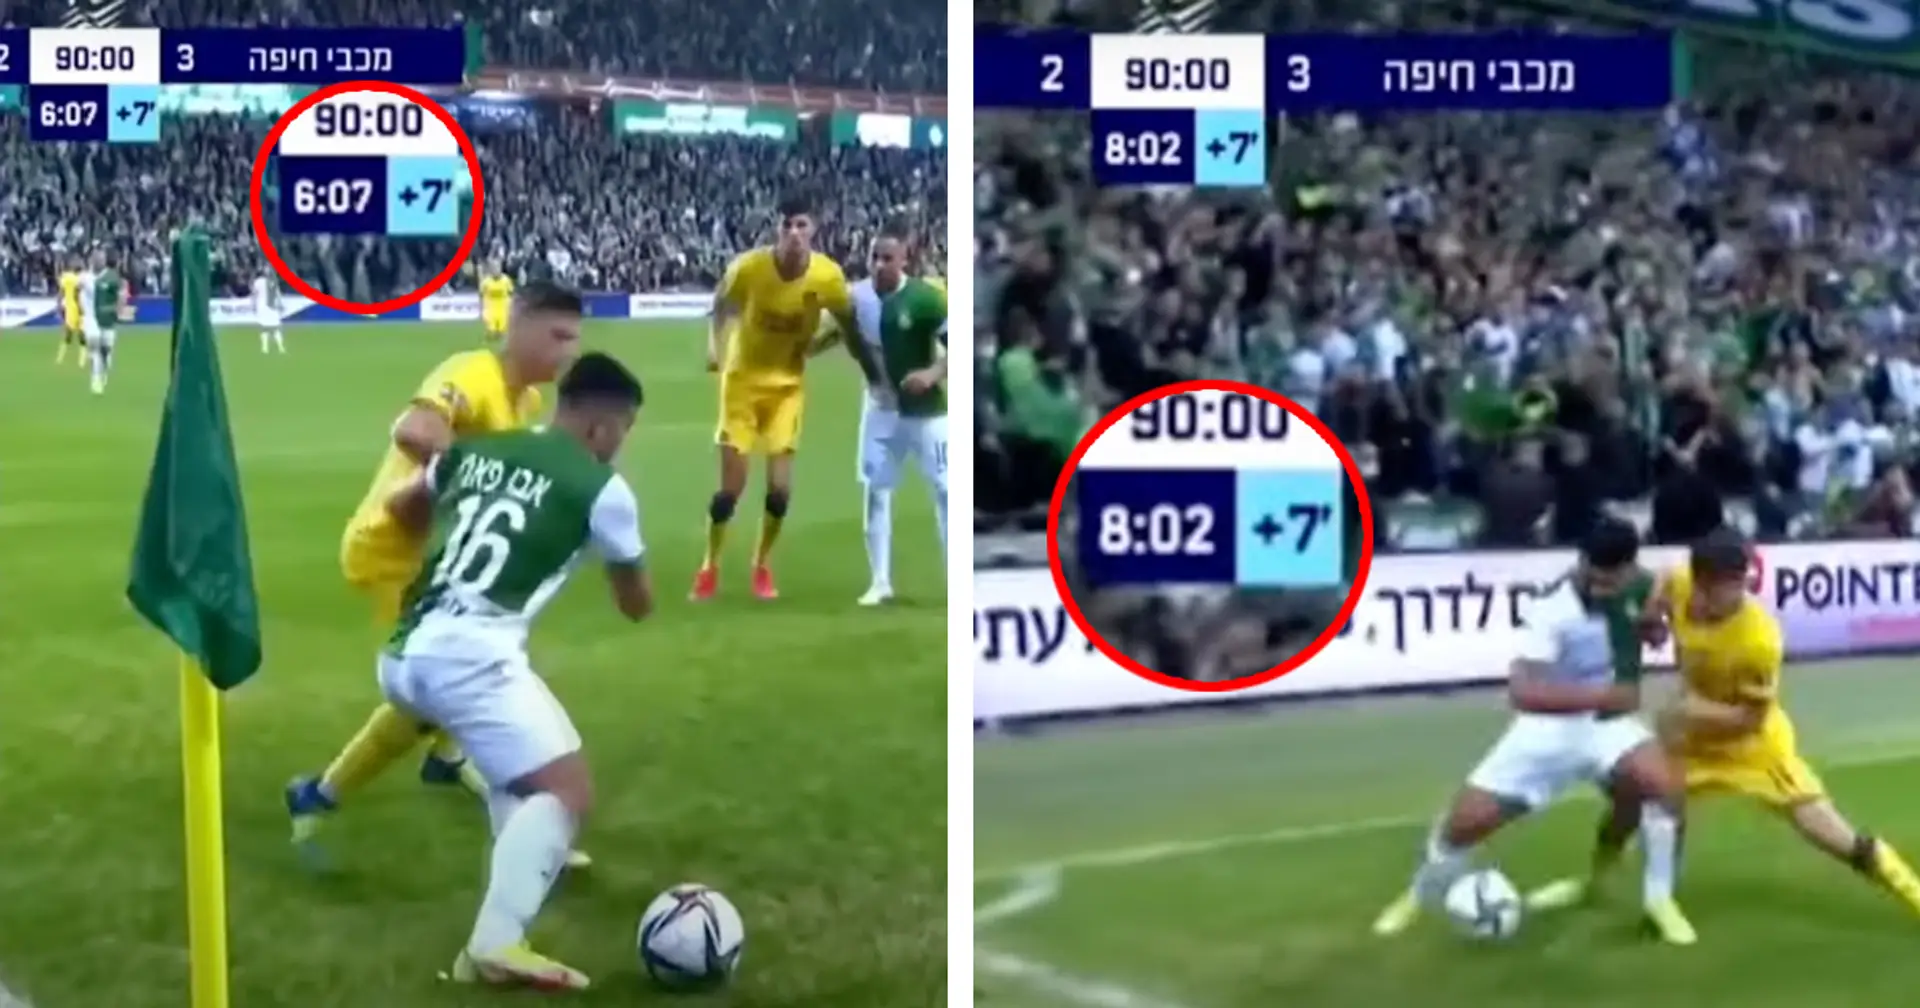 Maccabi-Haifa-Spieler hält den Ball während 2 Minuten an der Eckfahne - die größte Zeitverschwendung aller Zeiten